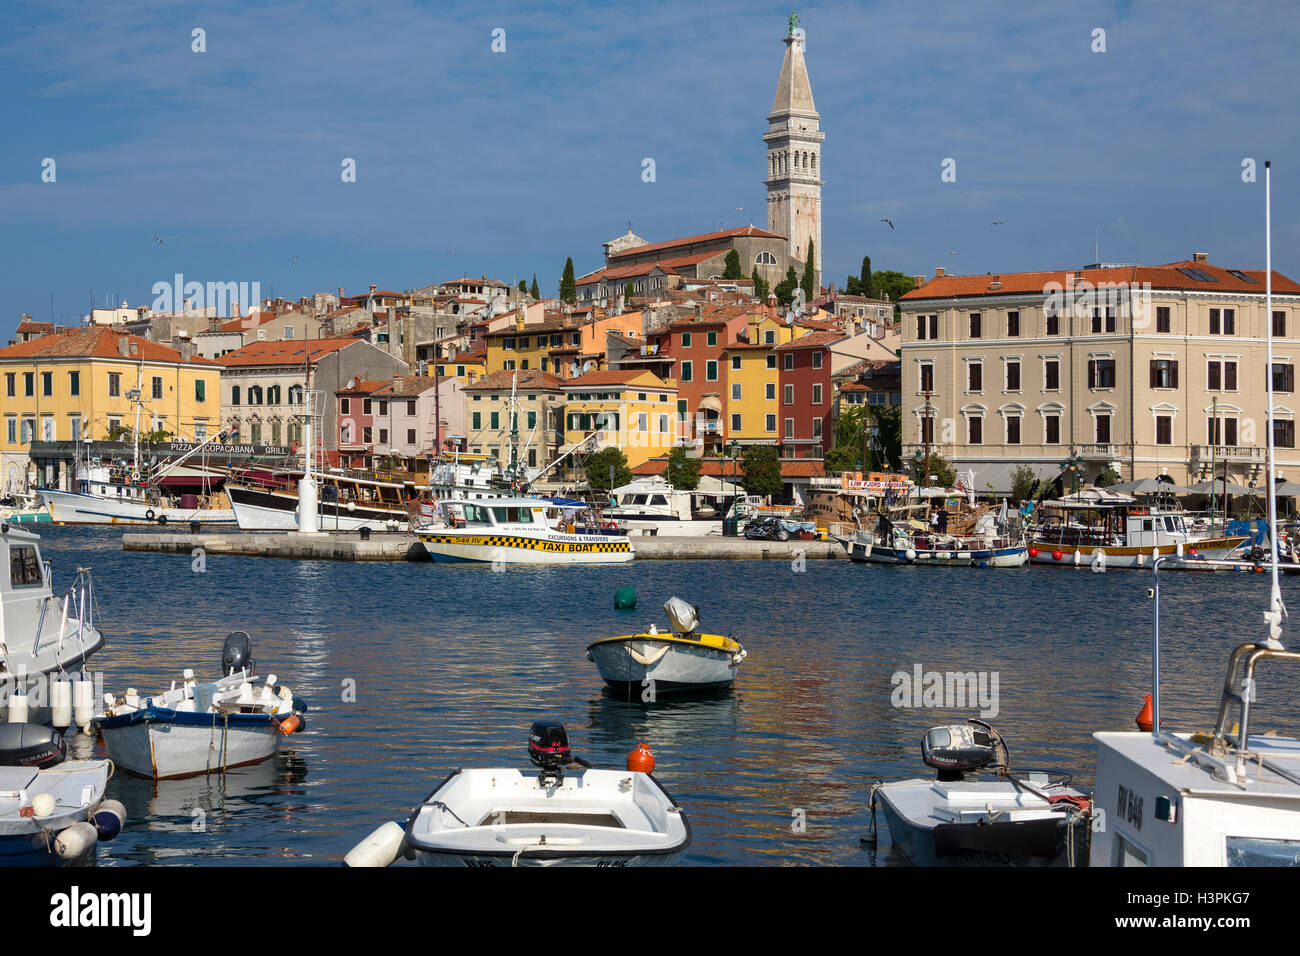 La ville et le port d'Rovenj sur la péninsule d'Istrie en Croatie. Banque D'Images